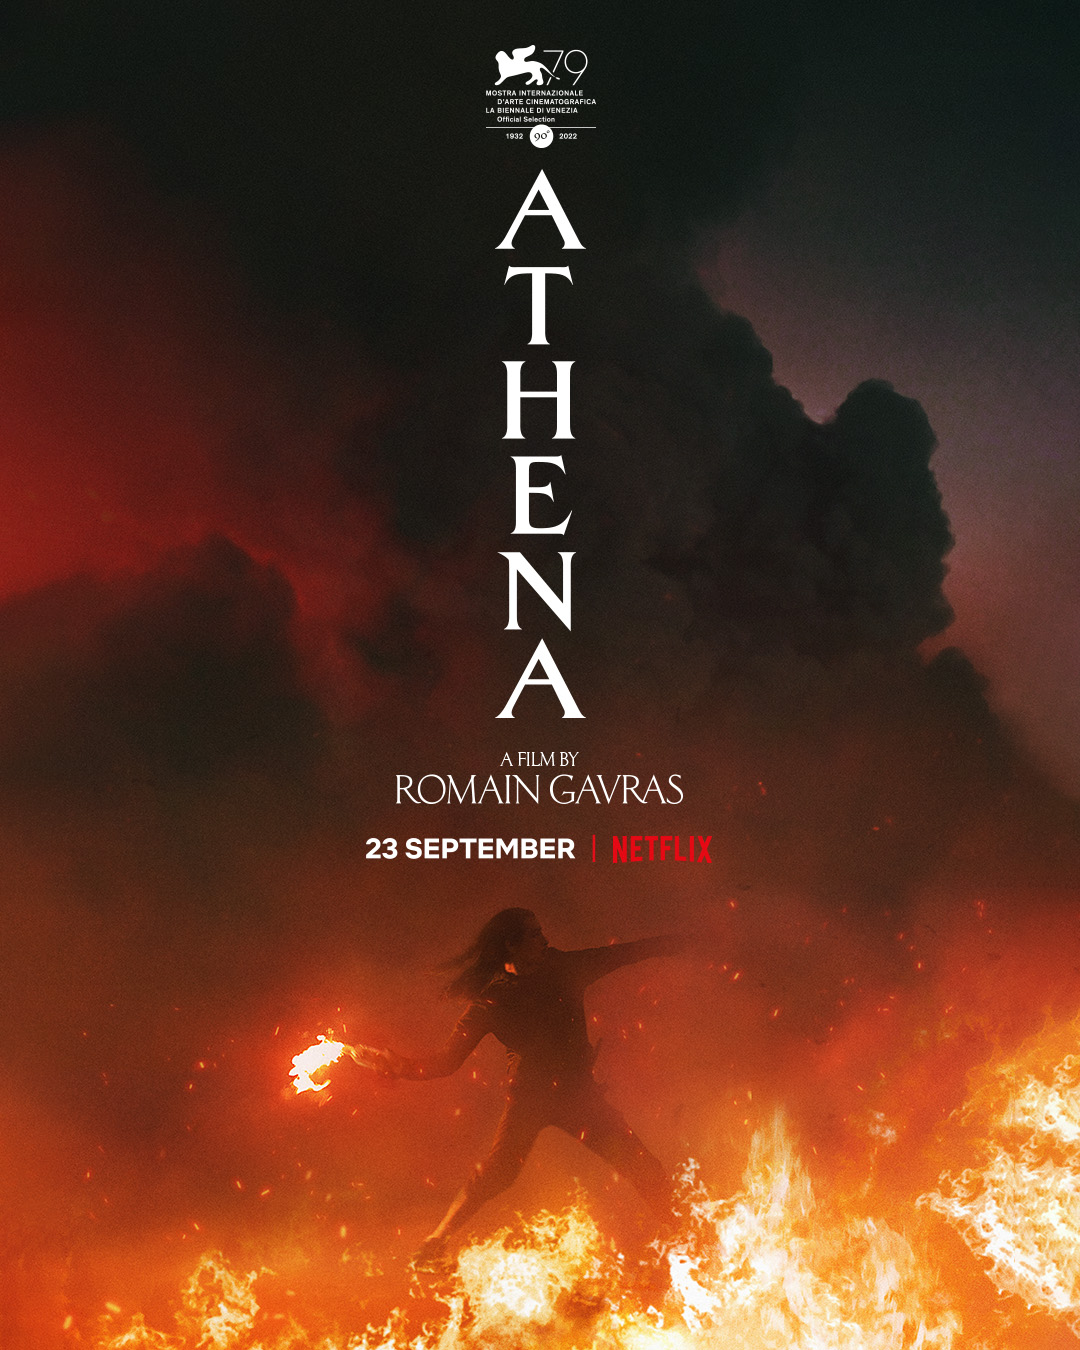 Das Poster zu Athena zeigt den Titel und einen Mann mit Molotowcocktail bereit zum Abwurf in Flammen.